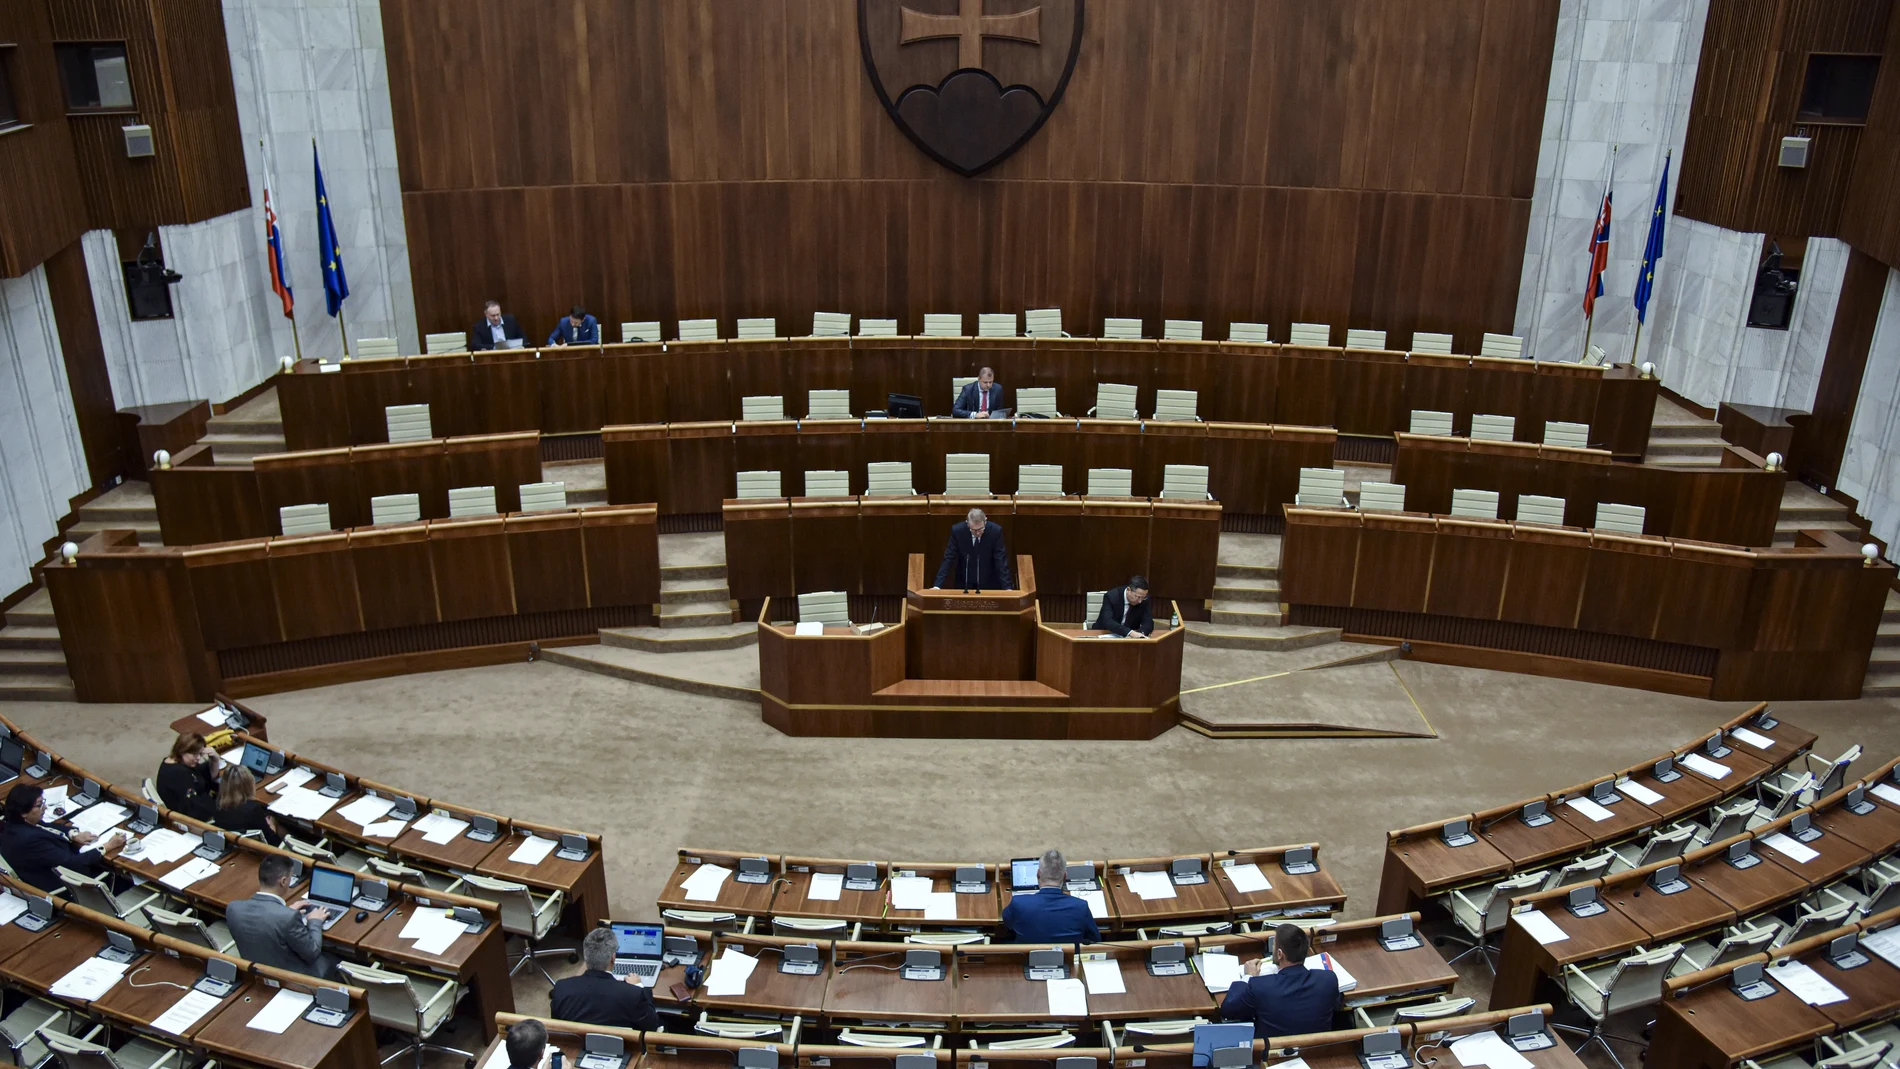 Imagen del Parlamento eslovaco donde se discute hoy la aprobación del anteproyecto de ley de aborto